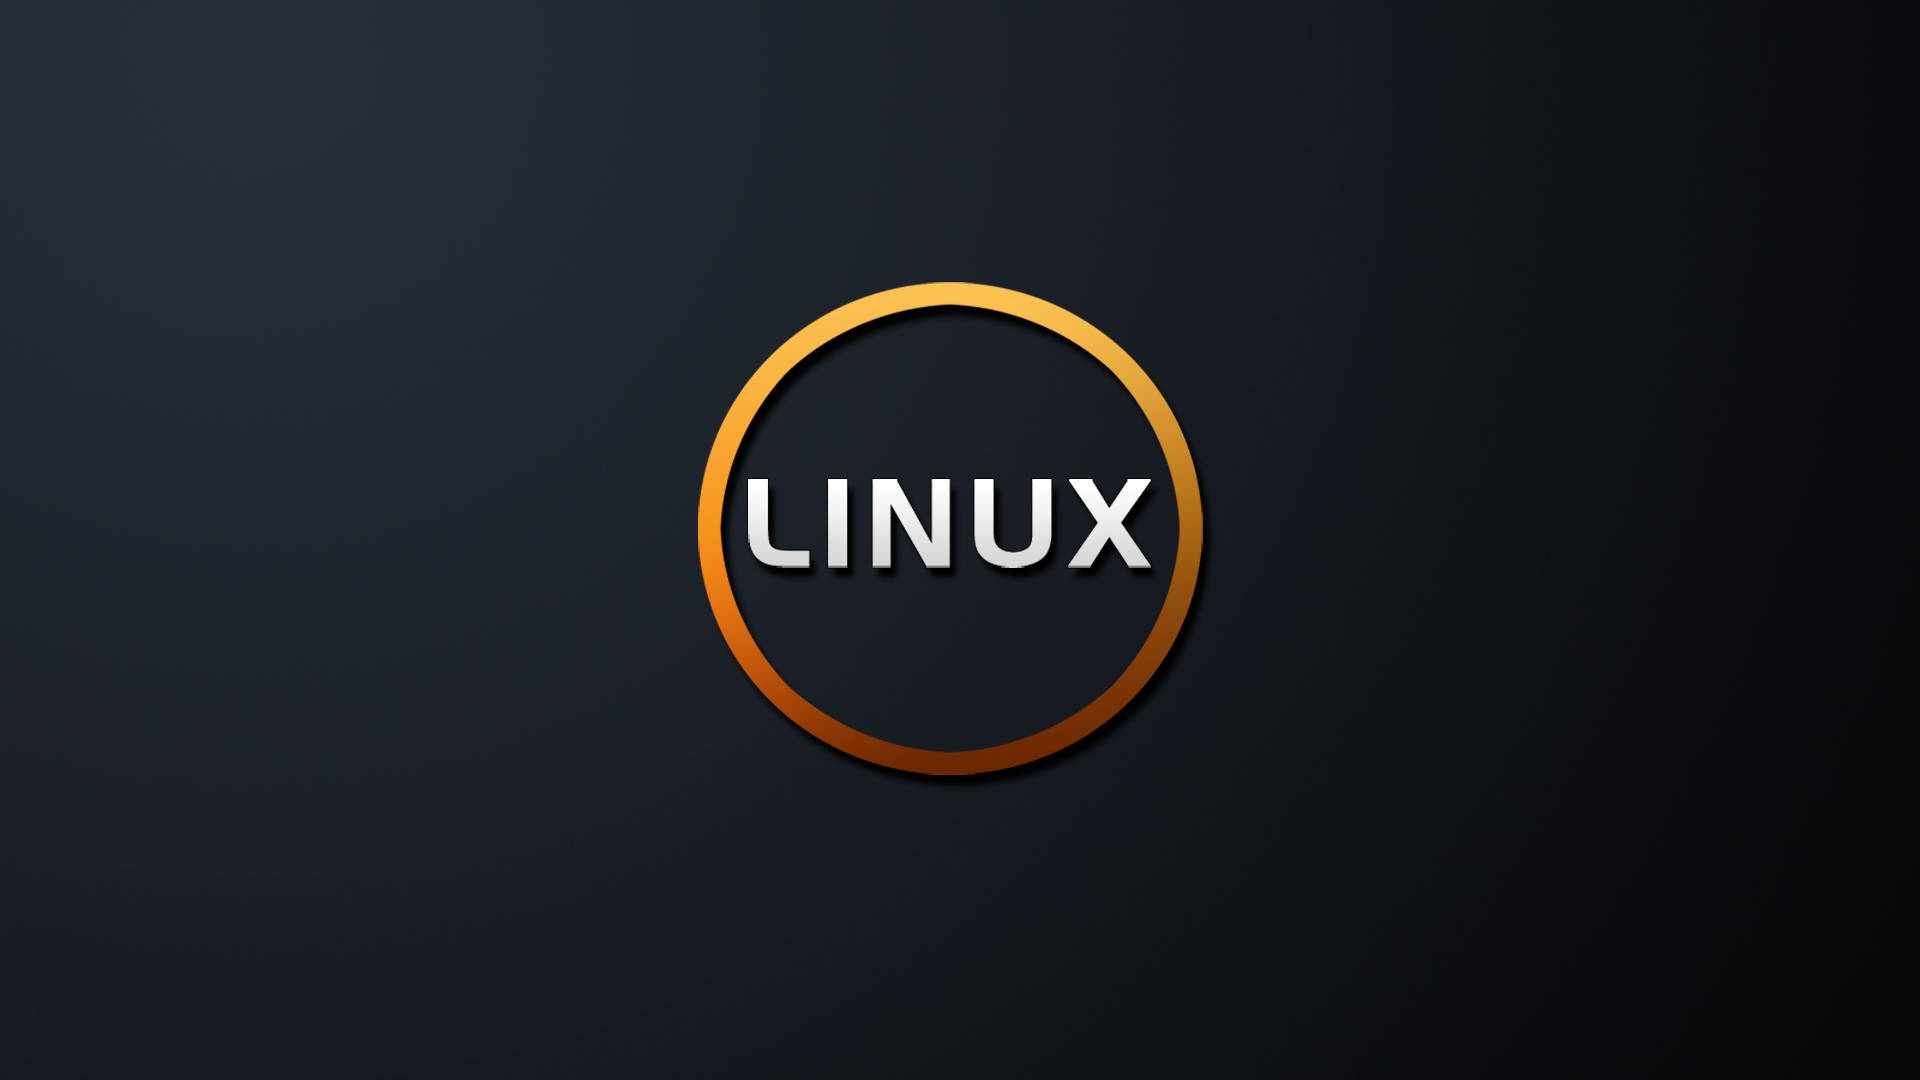 Linux Os Orange Circle Background